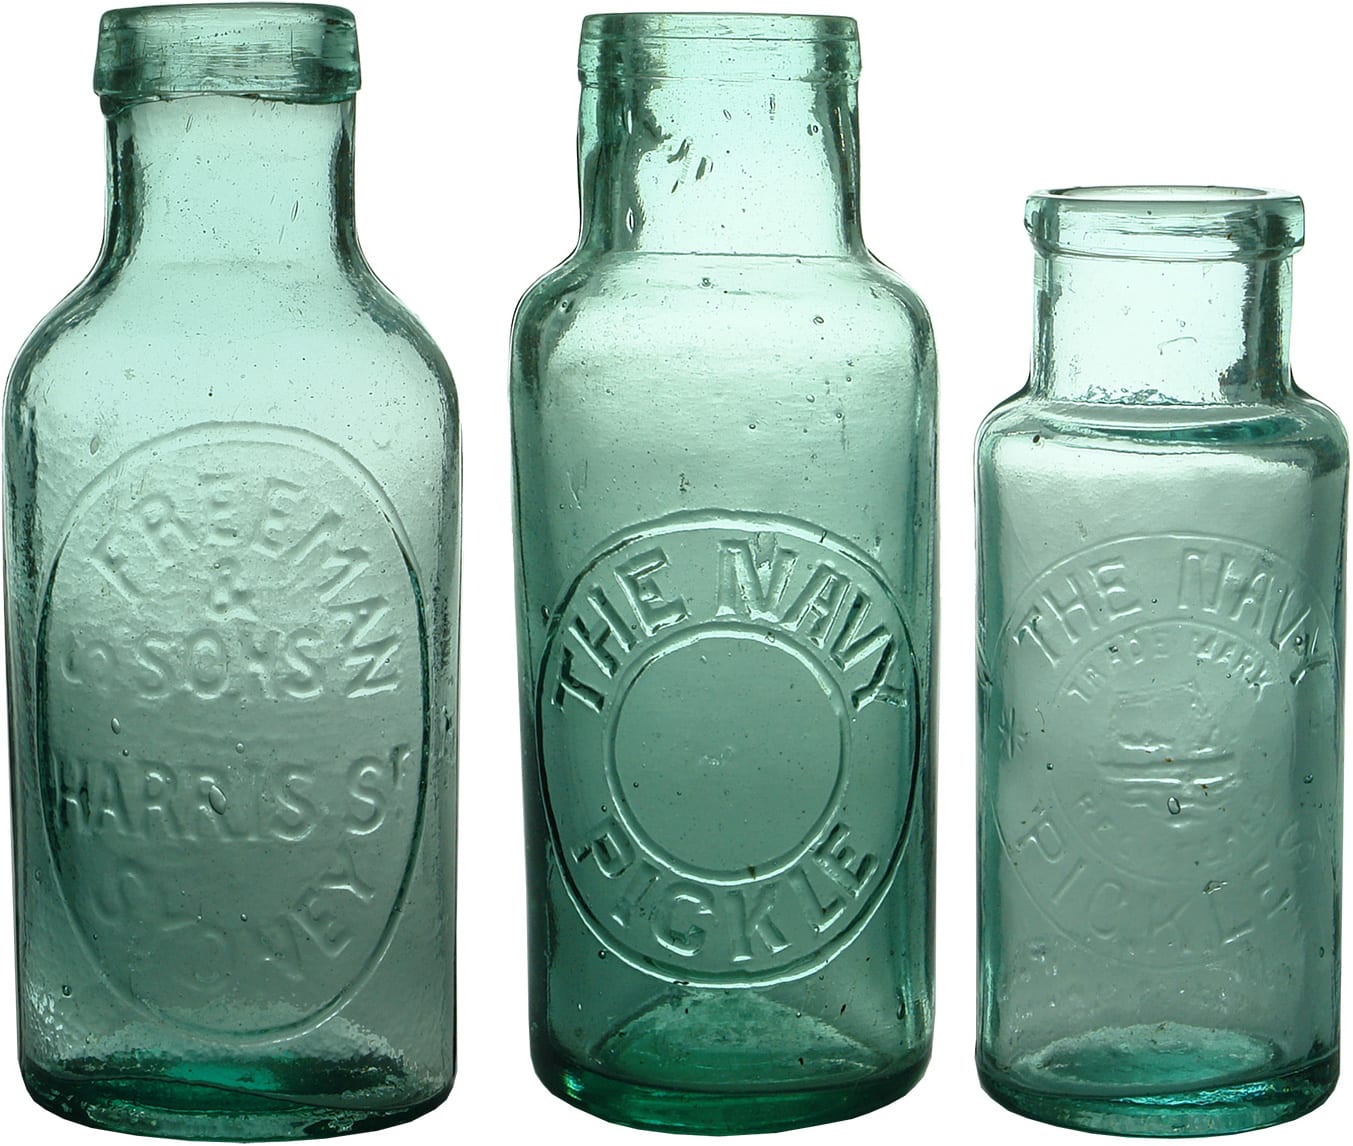 Antique Glass Sydney Pickles Jars